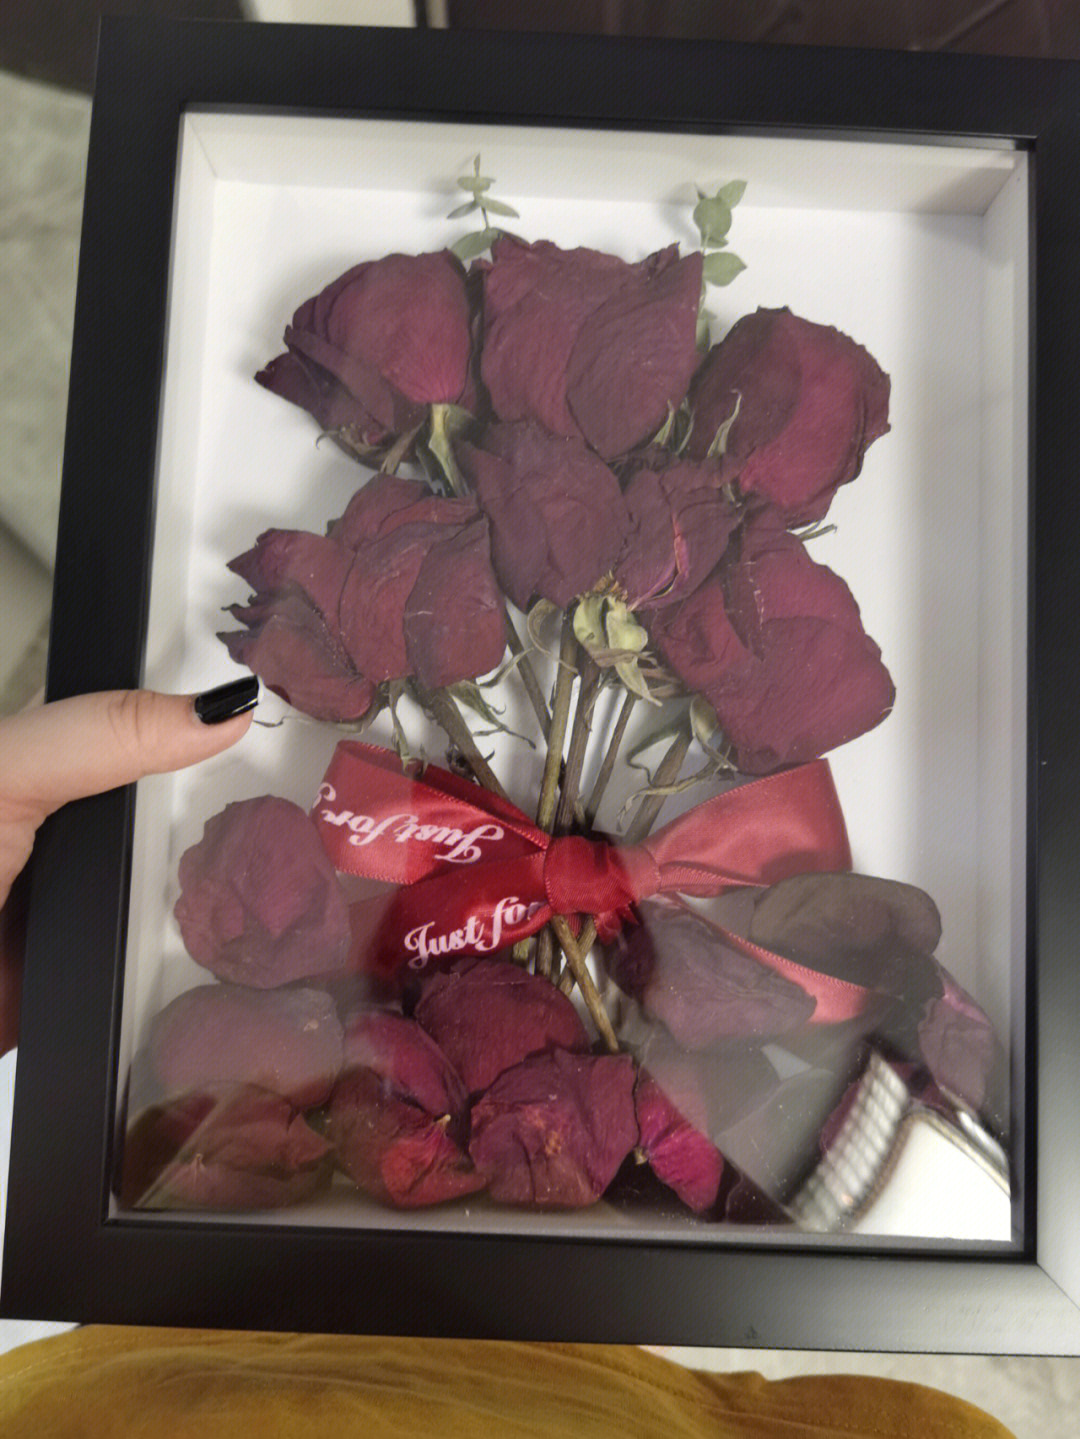 女神节收到的玫瑰花,历时两周用于完成了干花相框!